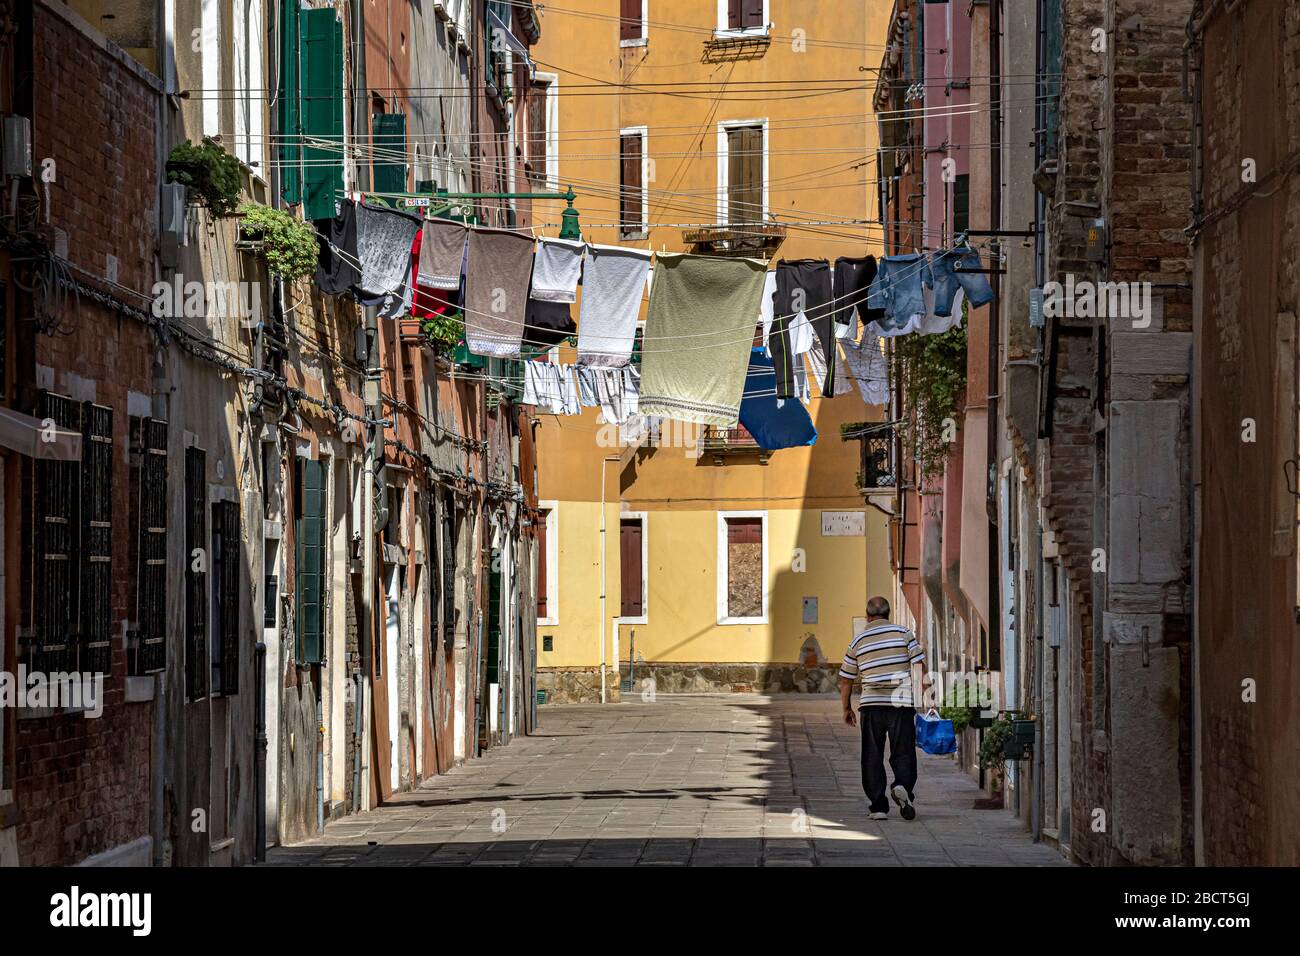 Un uomo cammina lungo Corte Calle colonne un piccolo cortile a Venezia, Italia con lavaggio appeso ad asciugare su una linea stretta tra case, Venezia Foto Stock